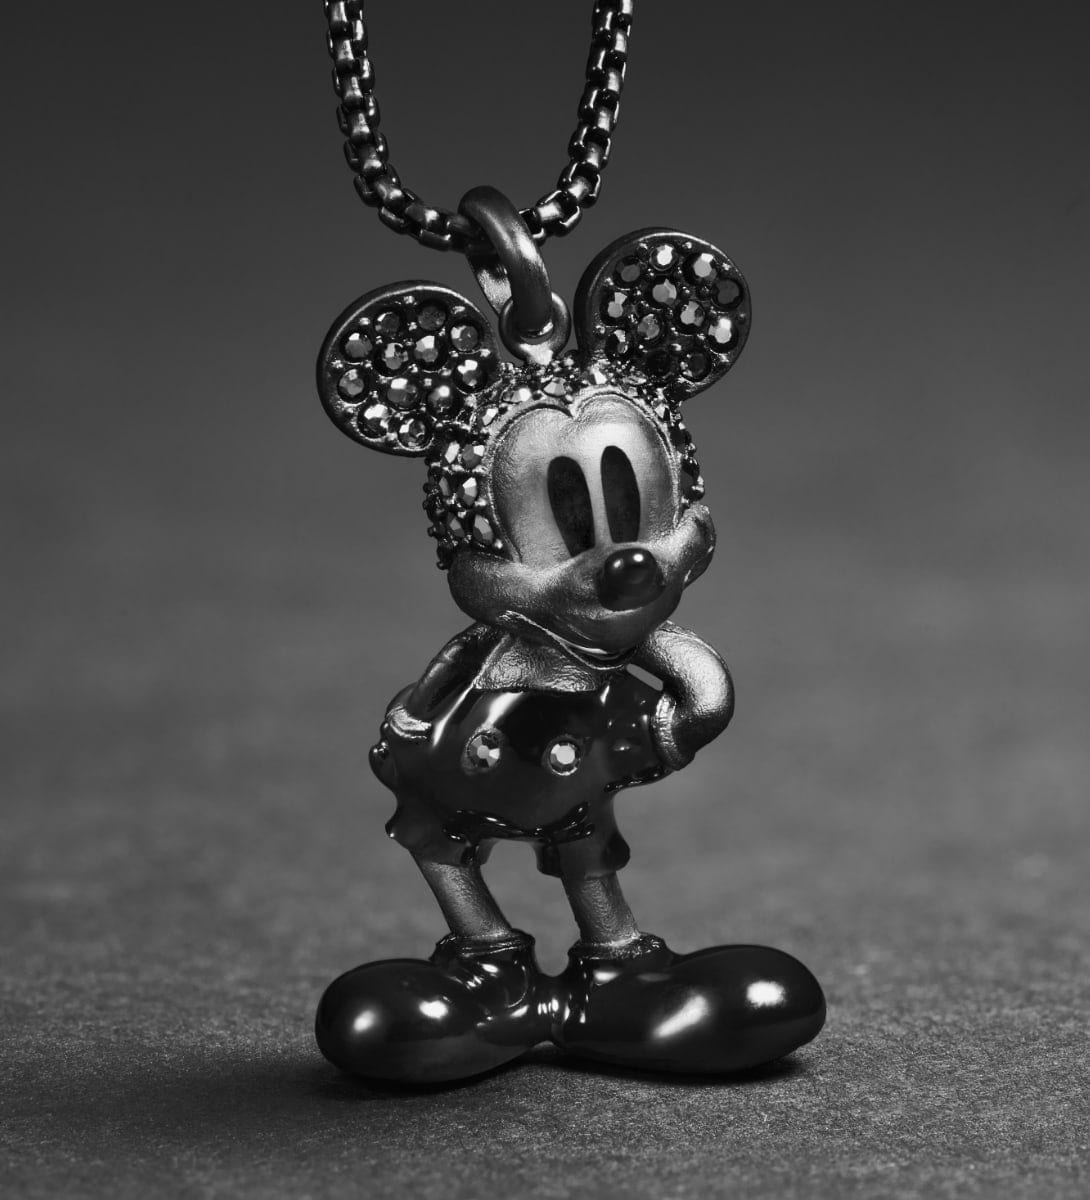 Ein animiertes GIF aus zwei Bildern. Das erste Bild zeigt eine komplett schwarze Halskette mit Micky Maus Anhänger und schwarzen Hämatit-Glassteinen. Das zweite Bild zeigt einen goldfarbenen Anhänger von Minnie Maus im Profil mit Glassteinakzenten.